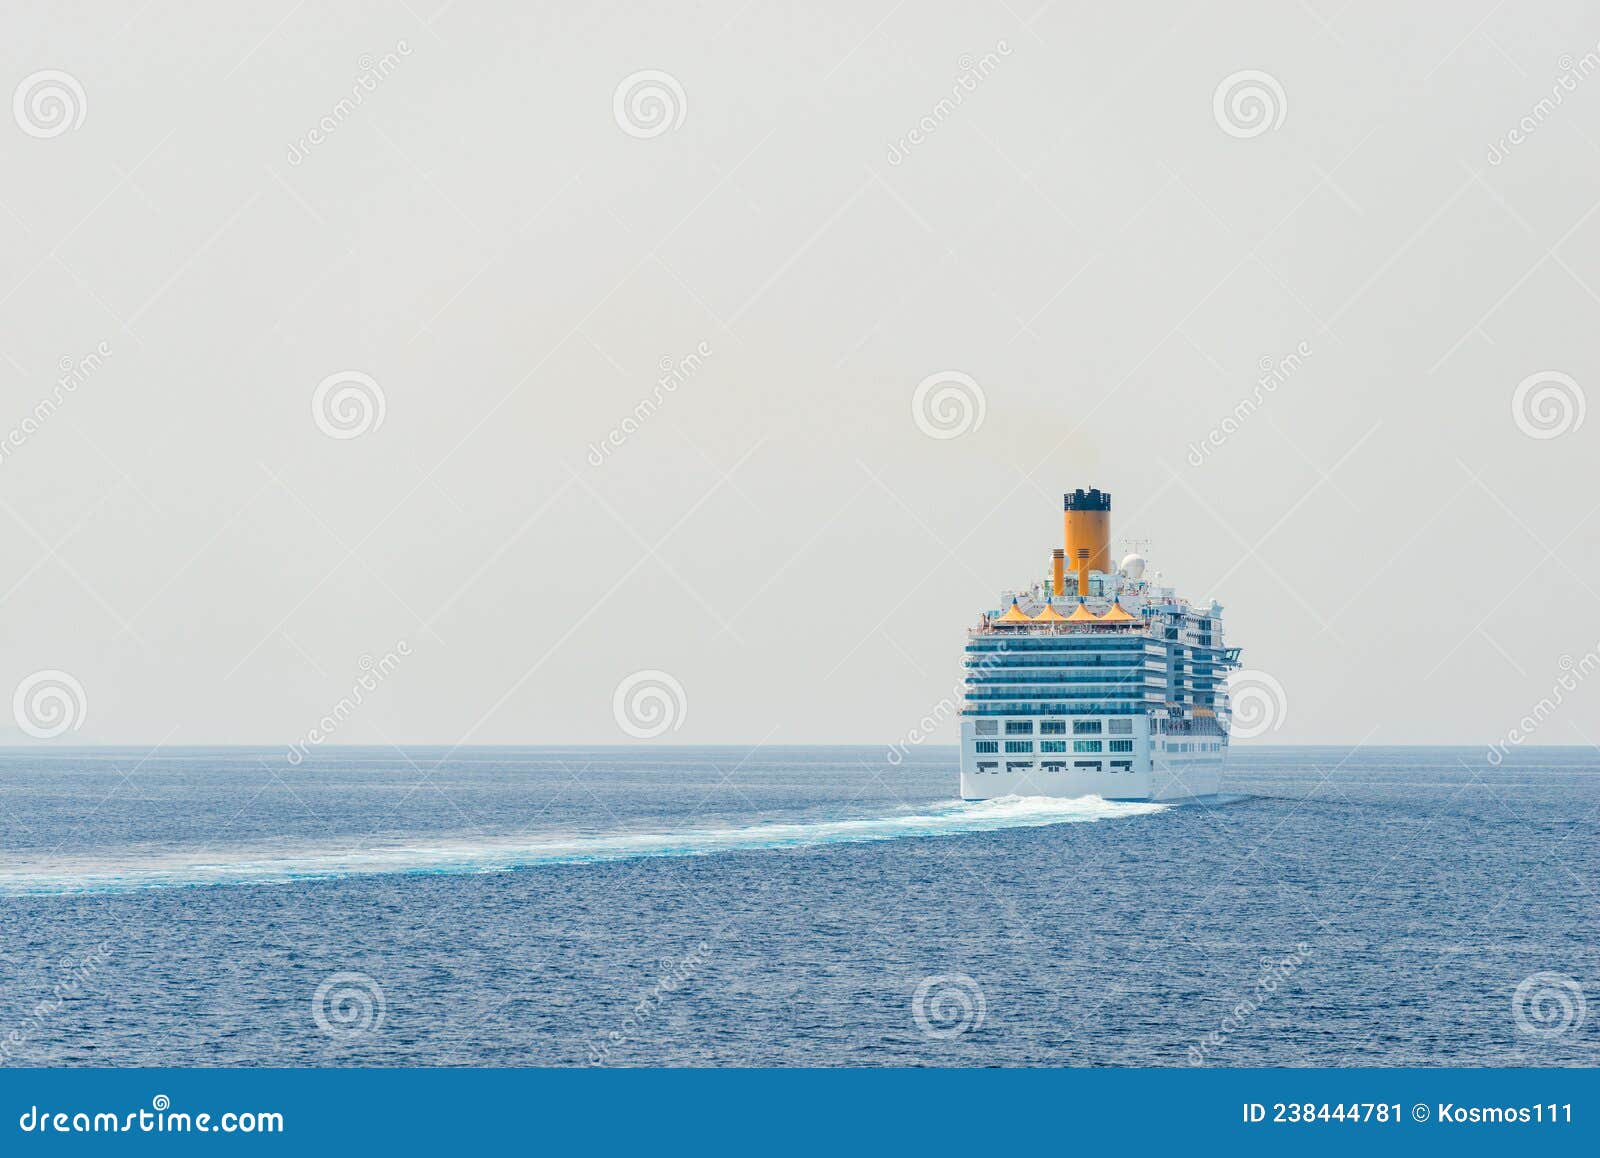 big cruise ship in the sea